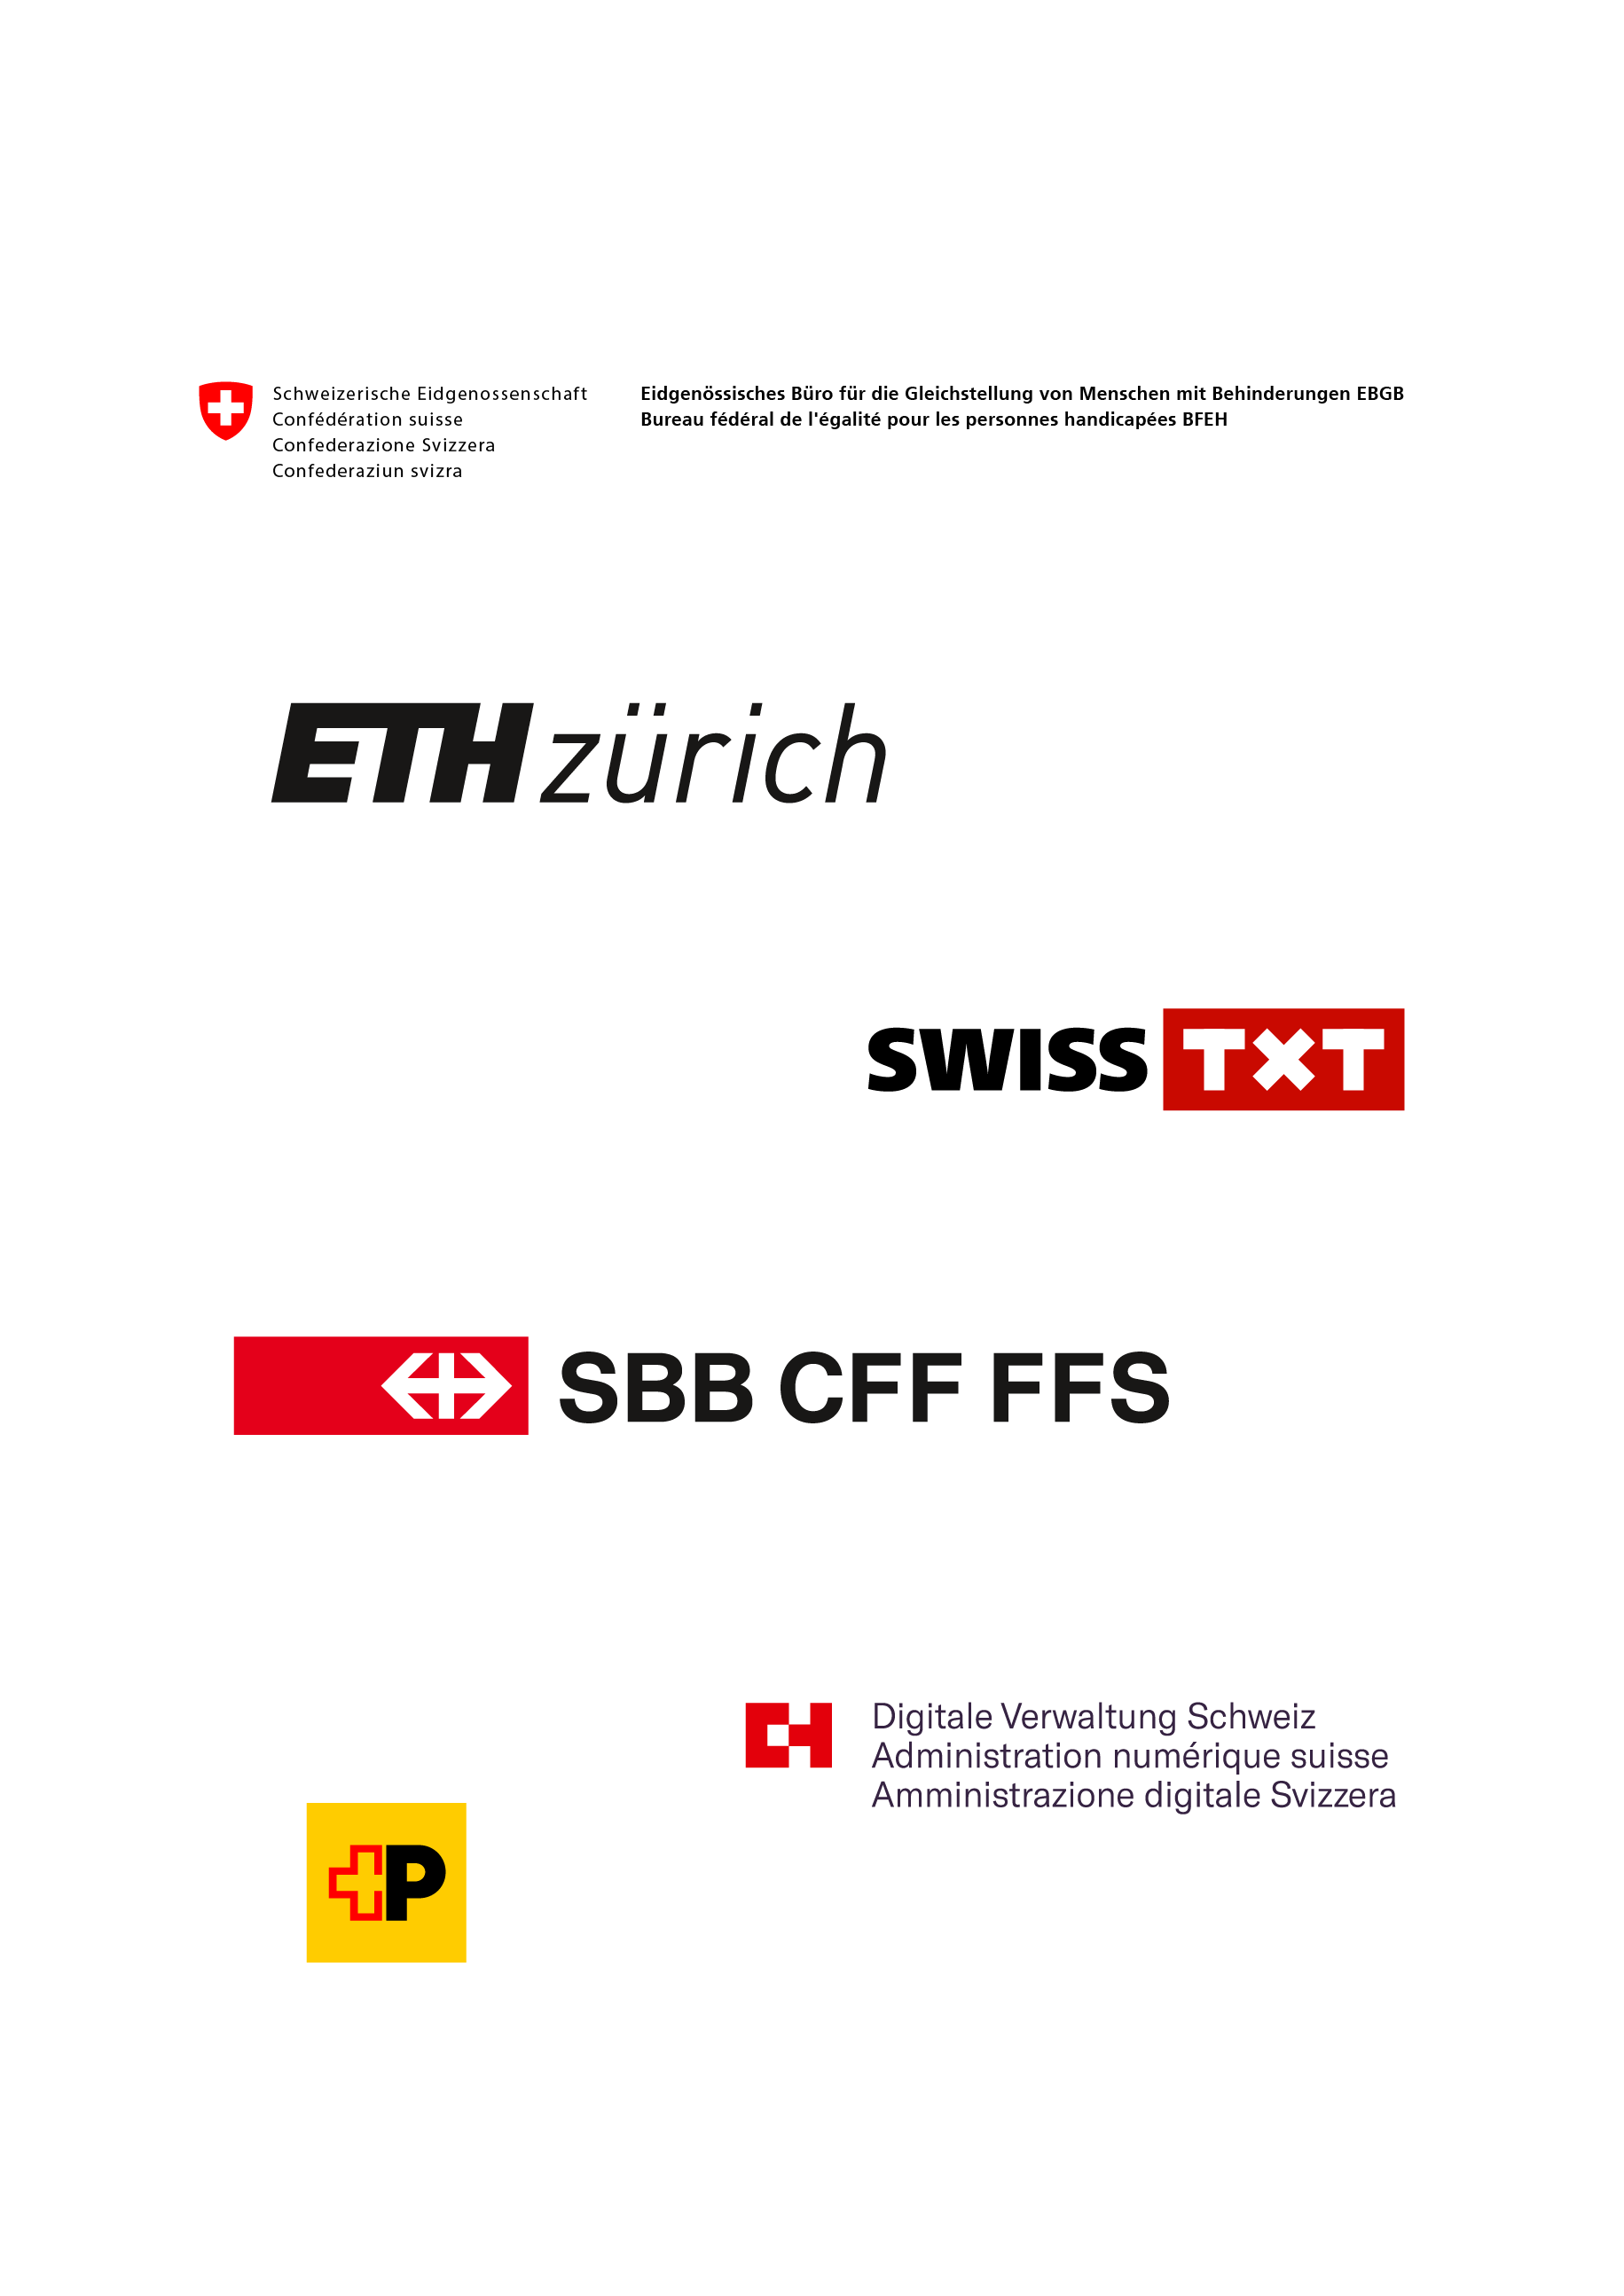 Organisation: Bureau fédéral de l’égalité pour les personnes handicapées, EPF Zurich, SWISS TXT, Poste CH, CFF, Administration numérique suisse